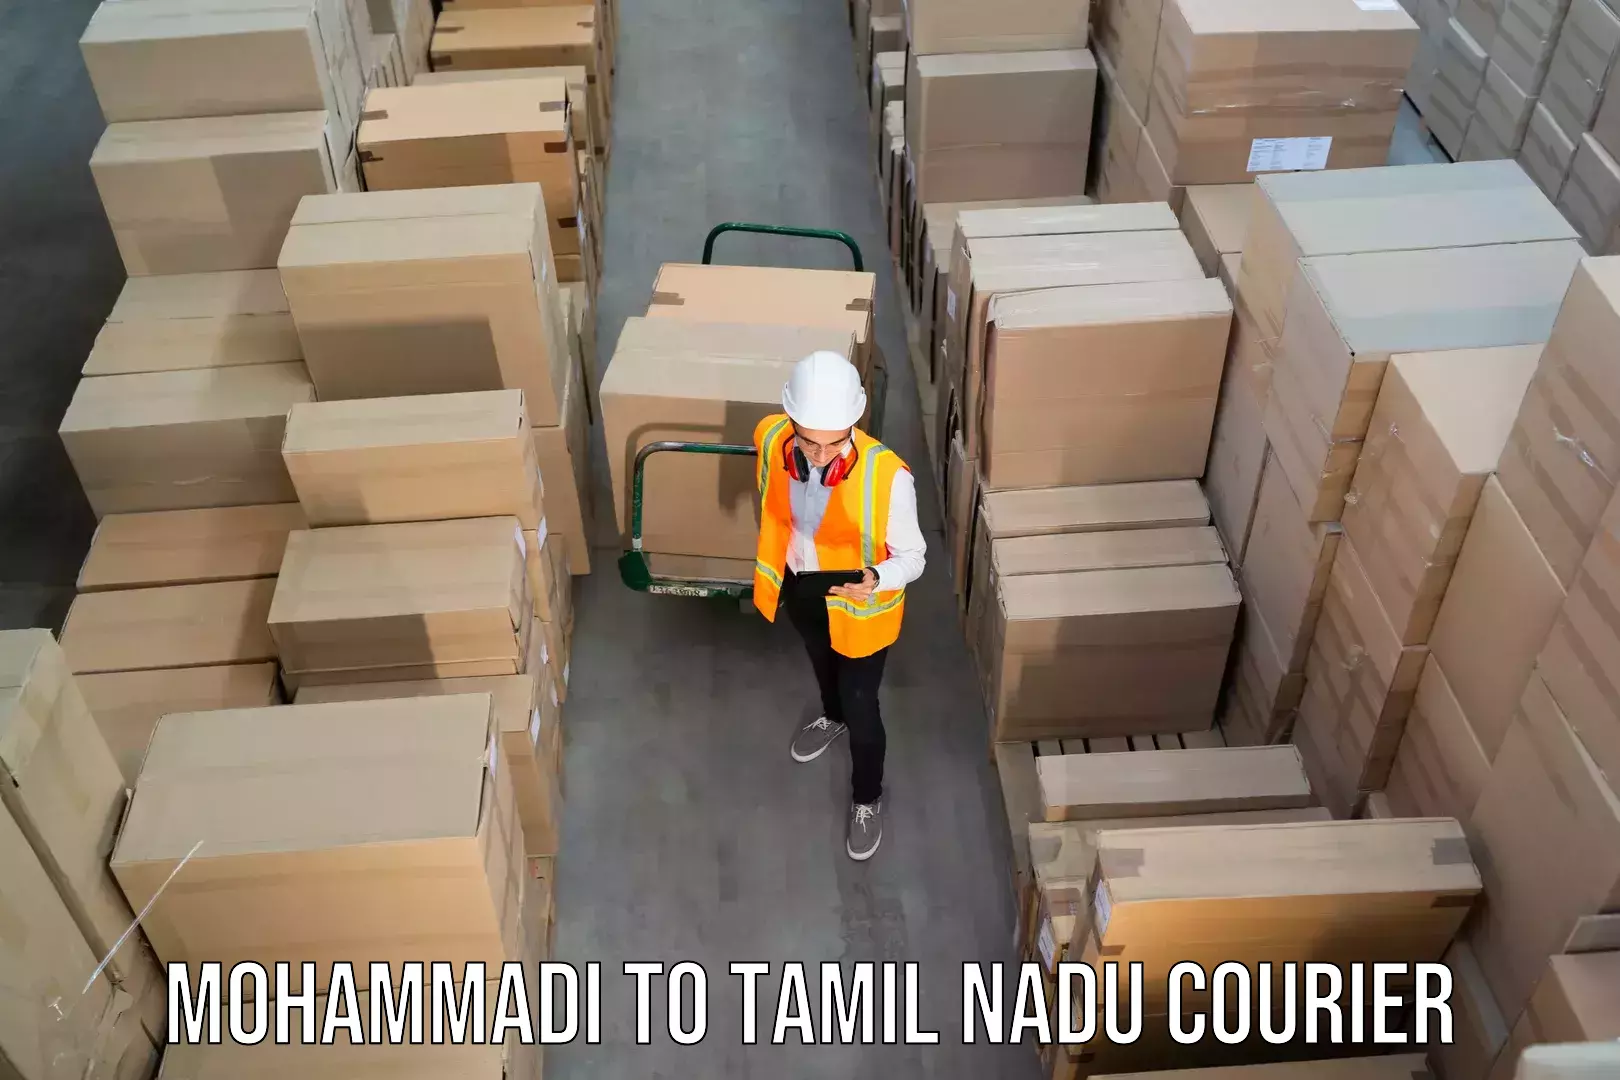 Next-day freight services Mohammadi to Chennai Port